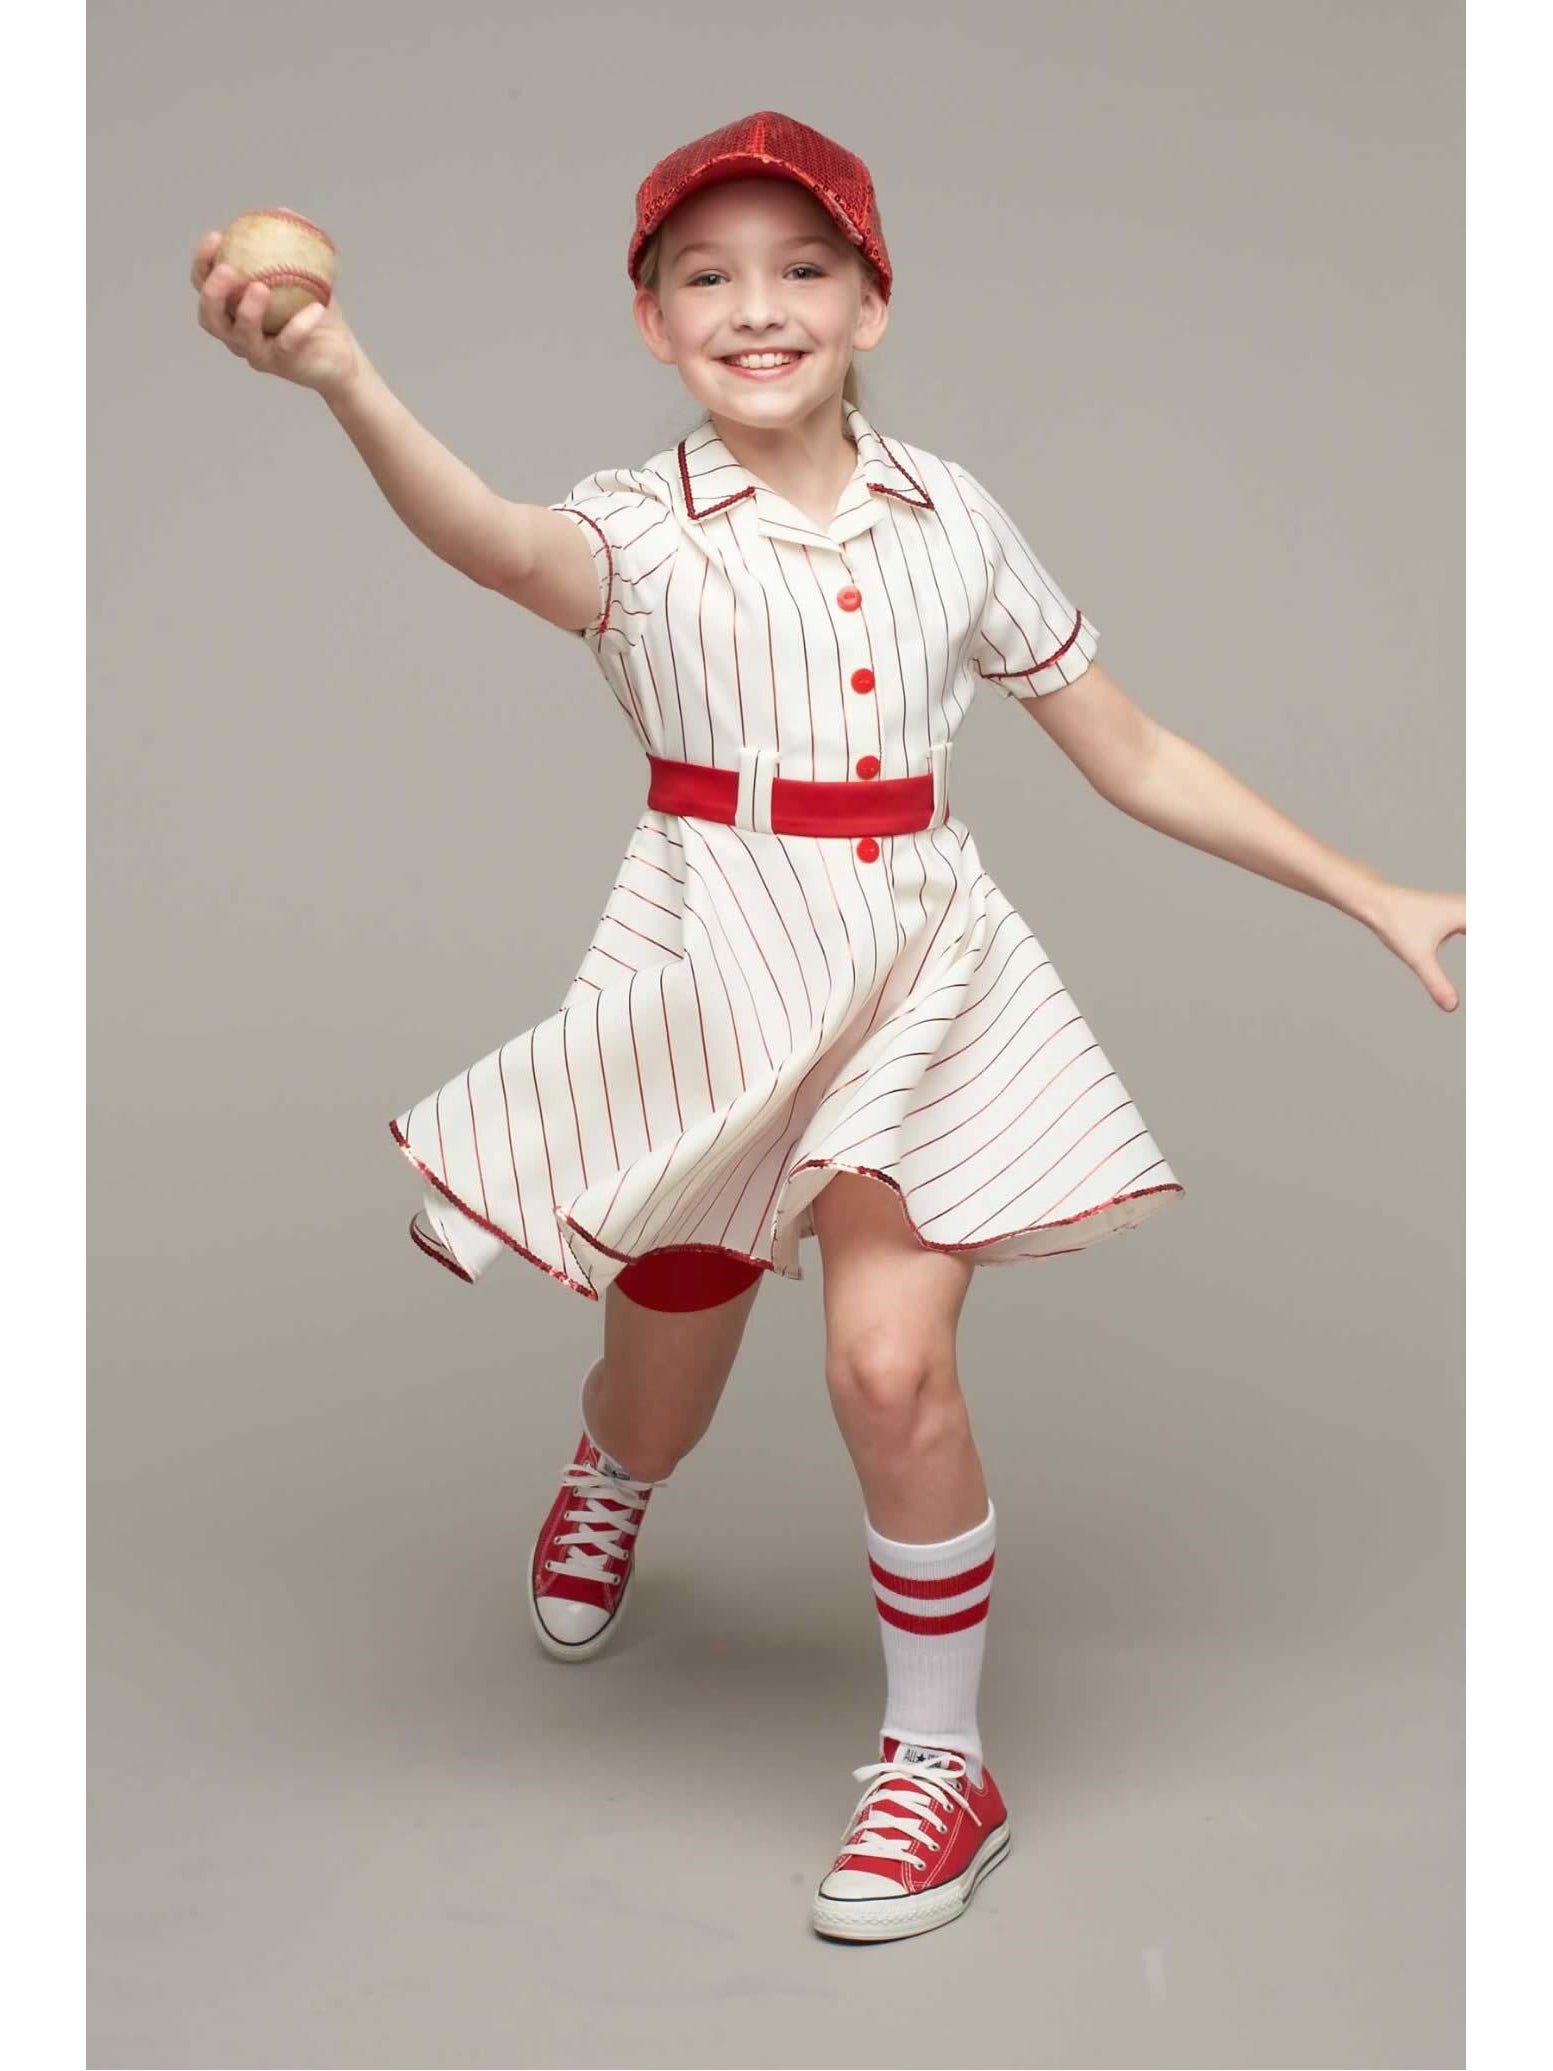 Fabrikant Beangstigend schaamte Retro Baseball Player Costume for Girls – Chasing Fireflies